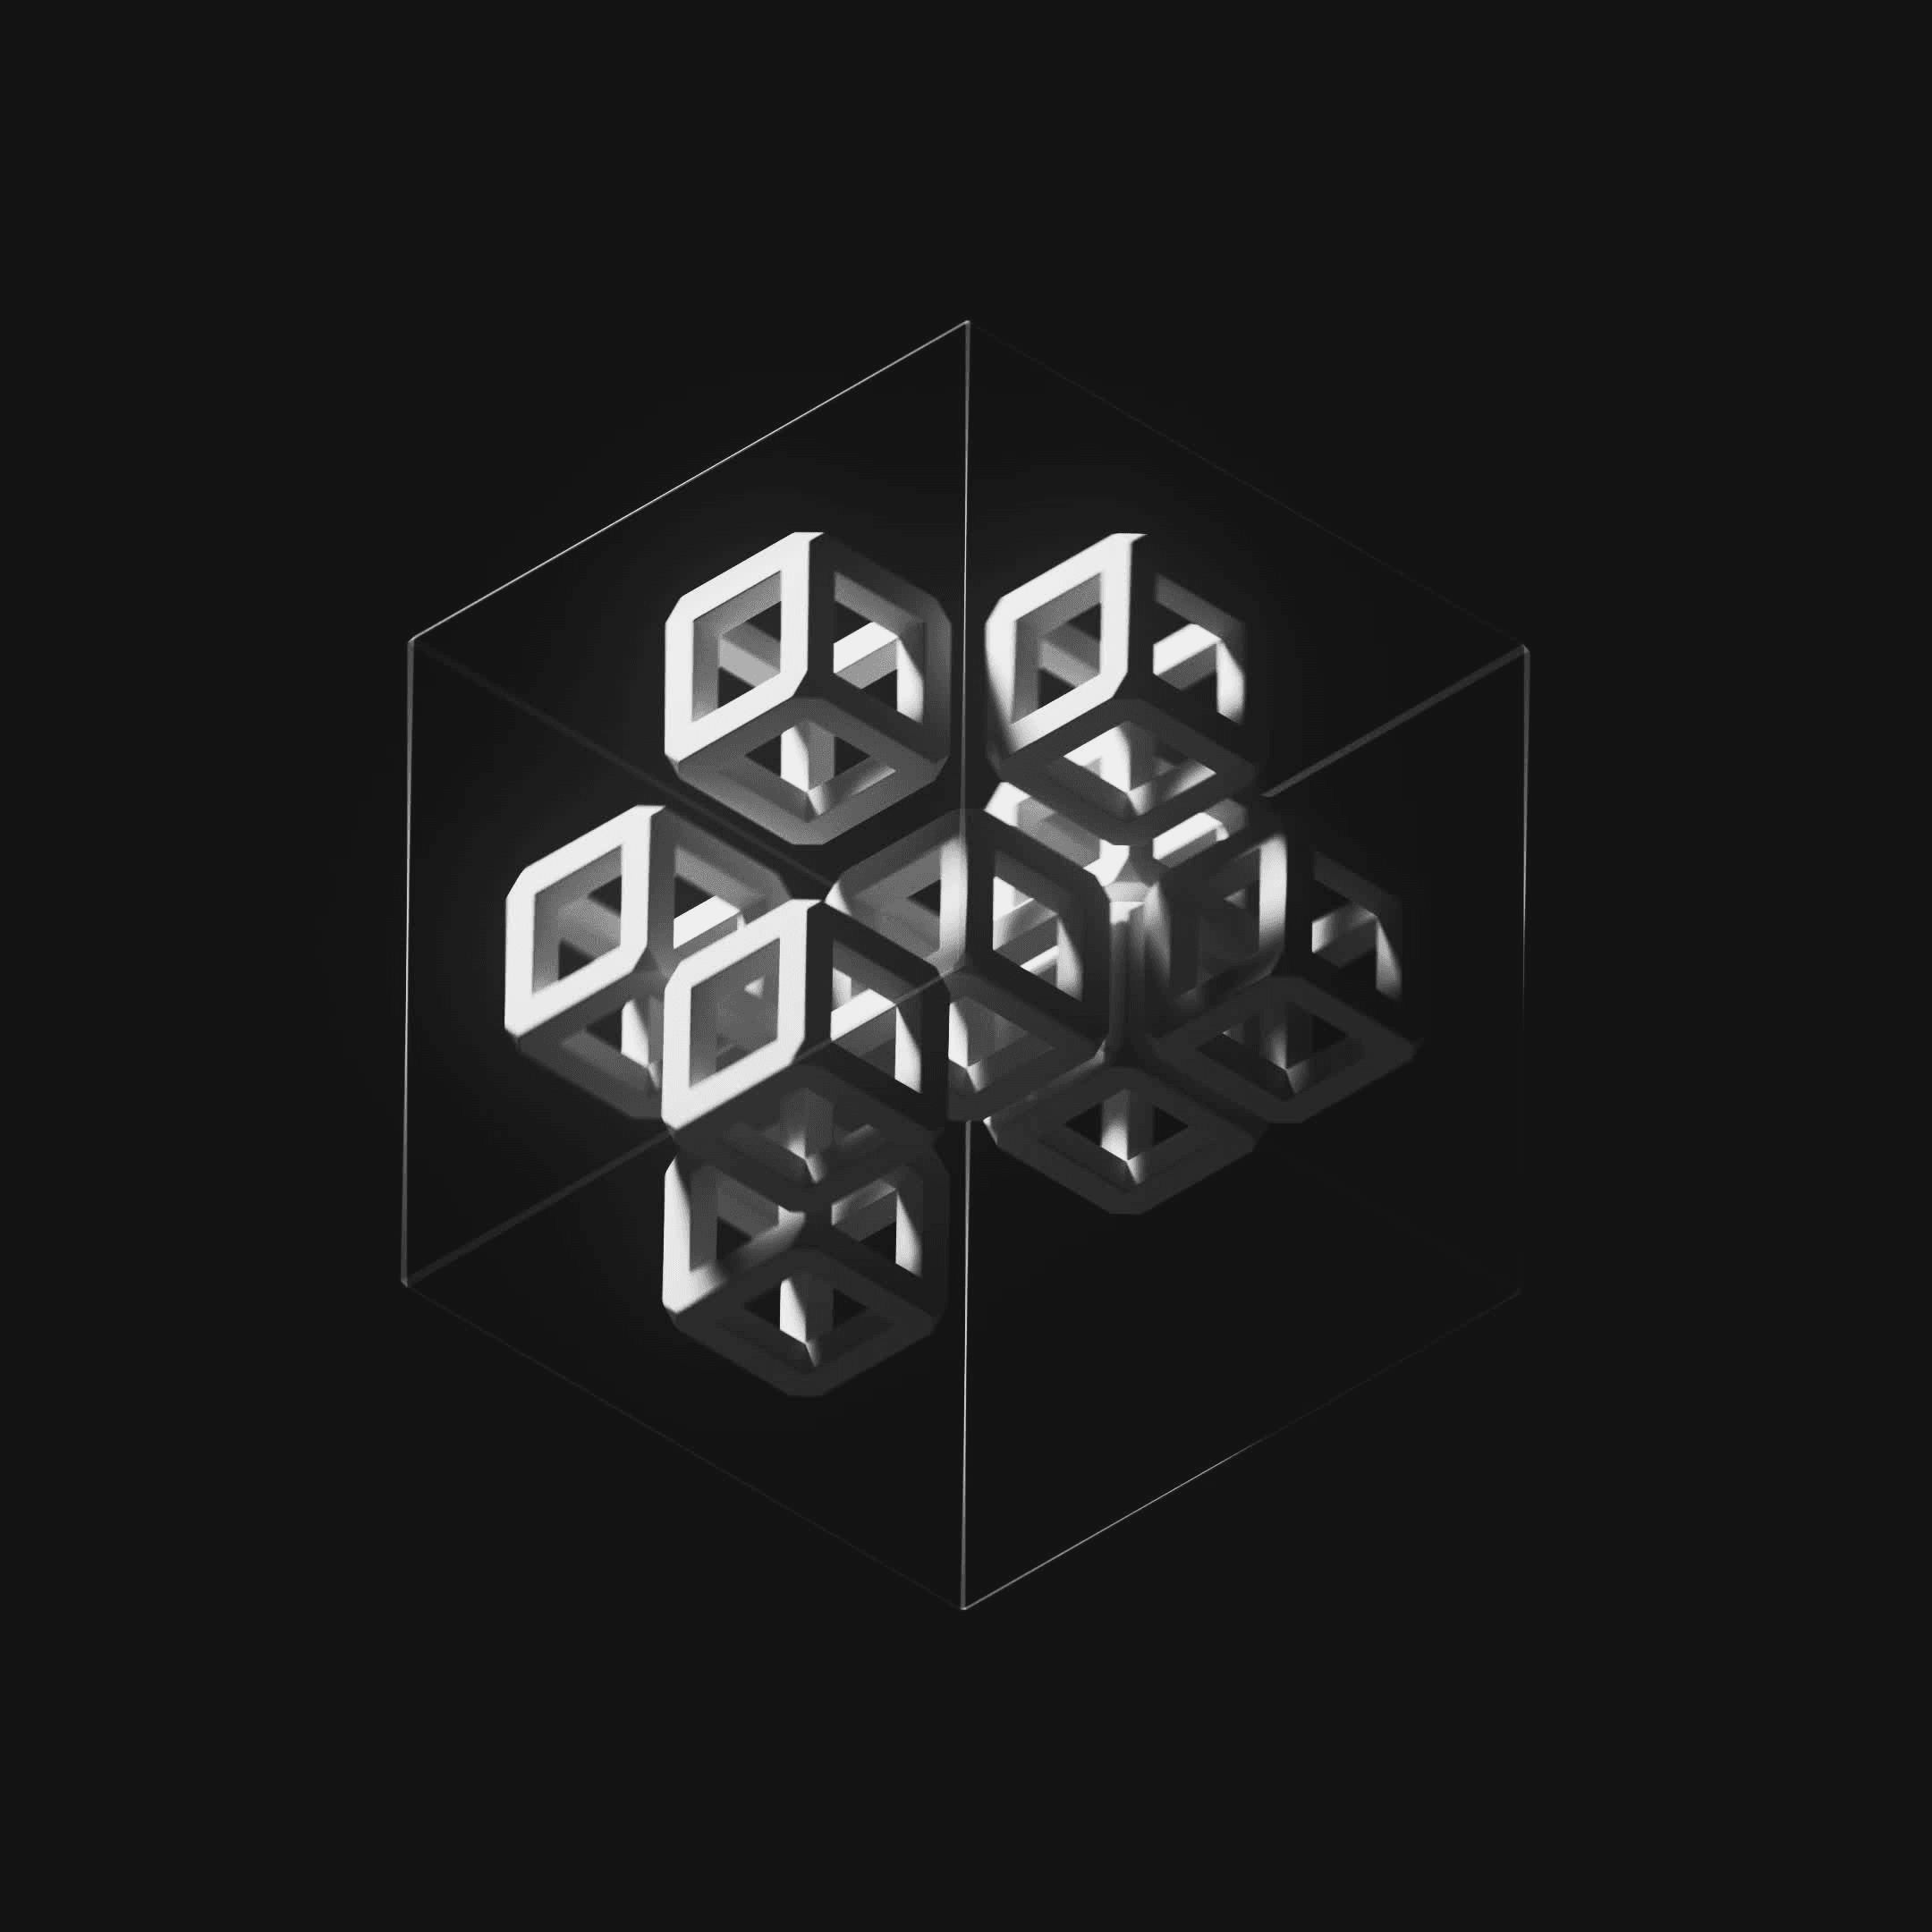 Ten Cubes #18/247